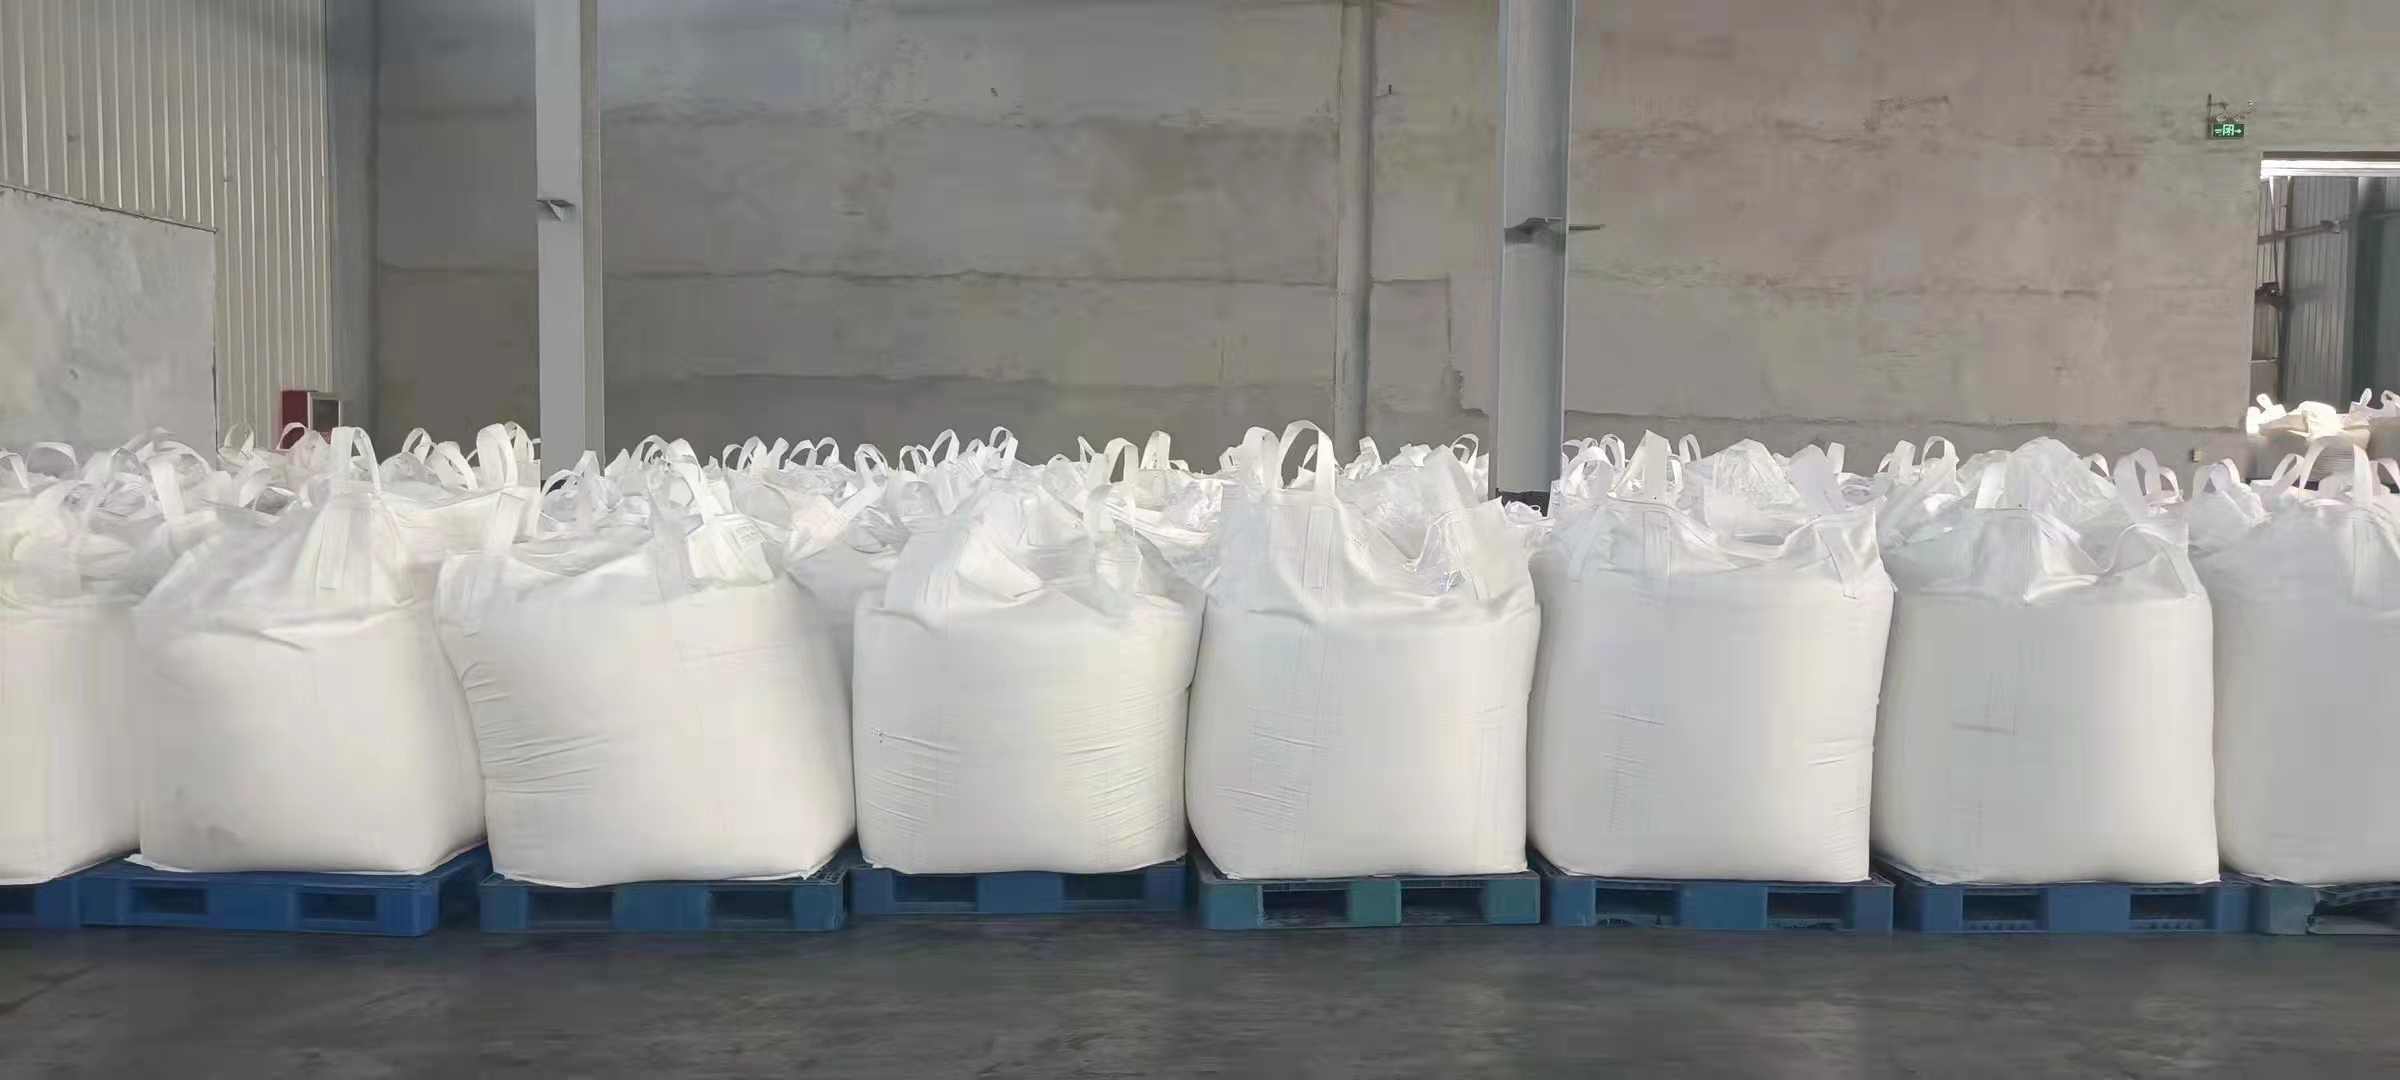 生产厂家大量供应聚丙烯酸钠接枝淀粉